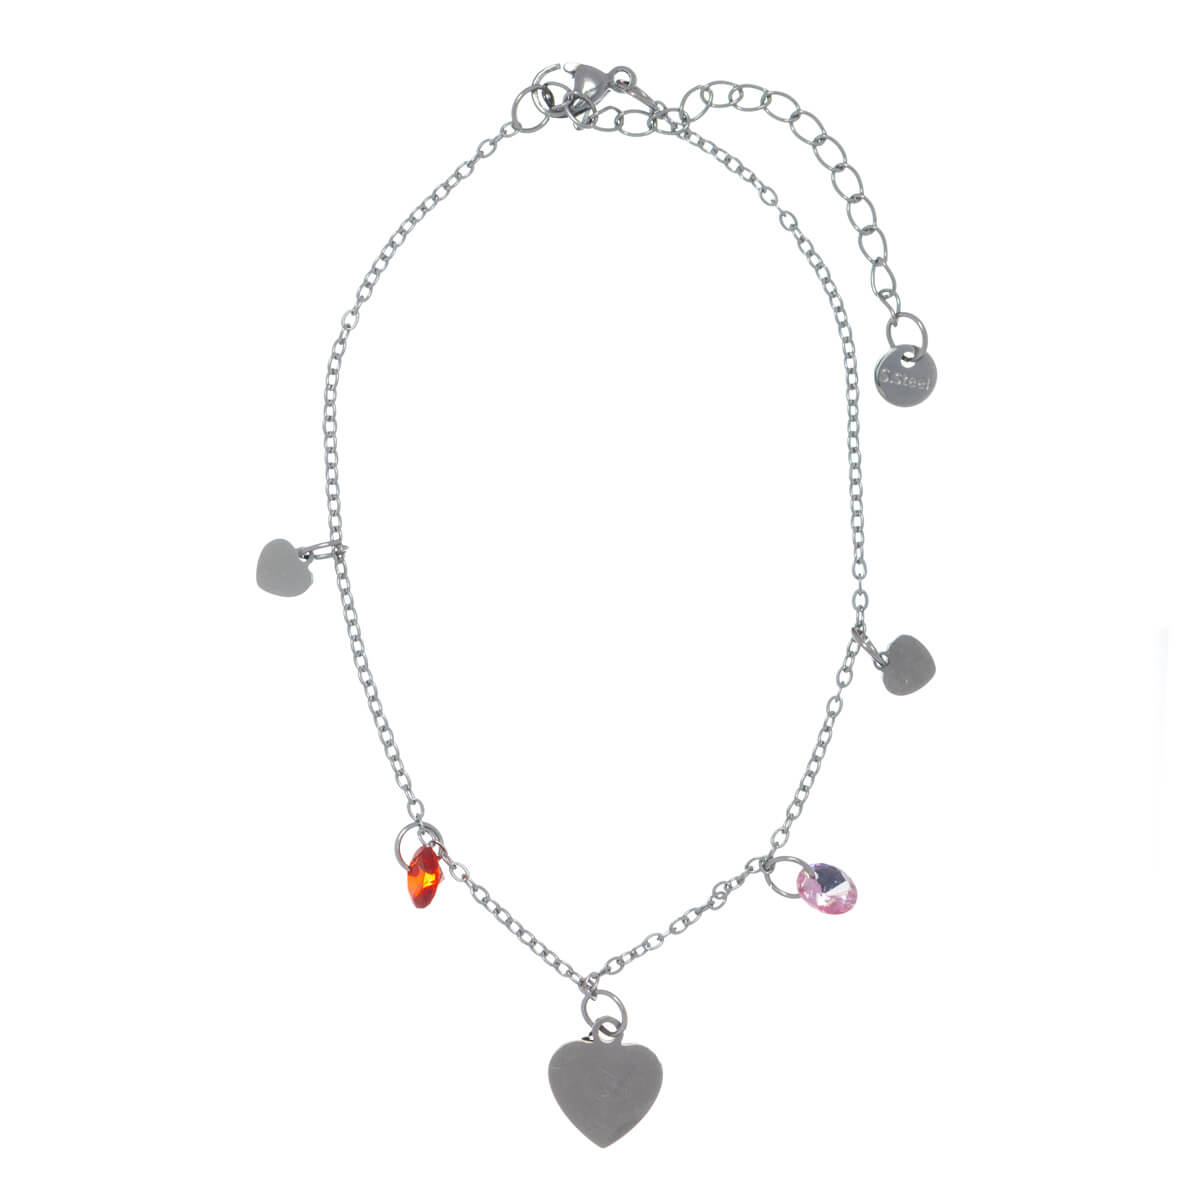 Steel ankle chain heart with pendants ankle bracelet (Steel 316L)